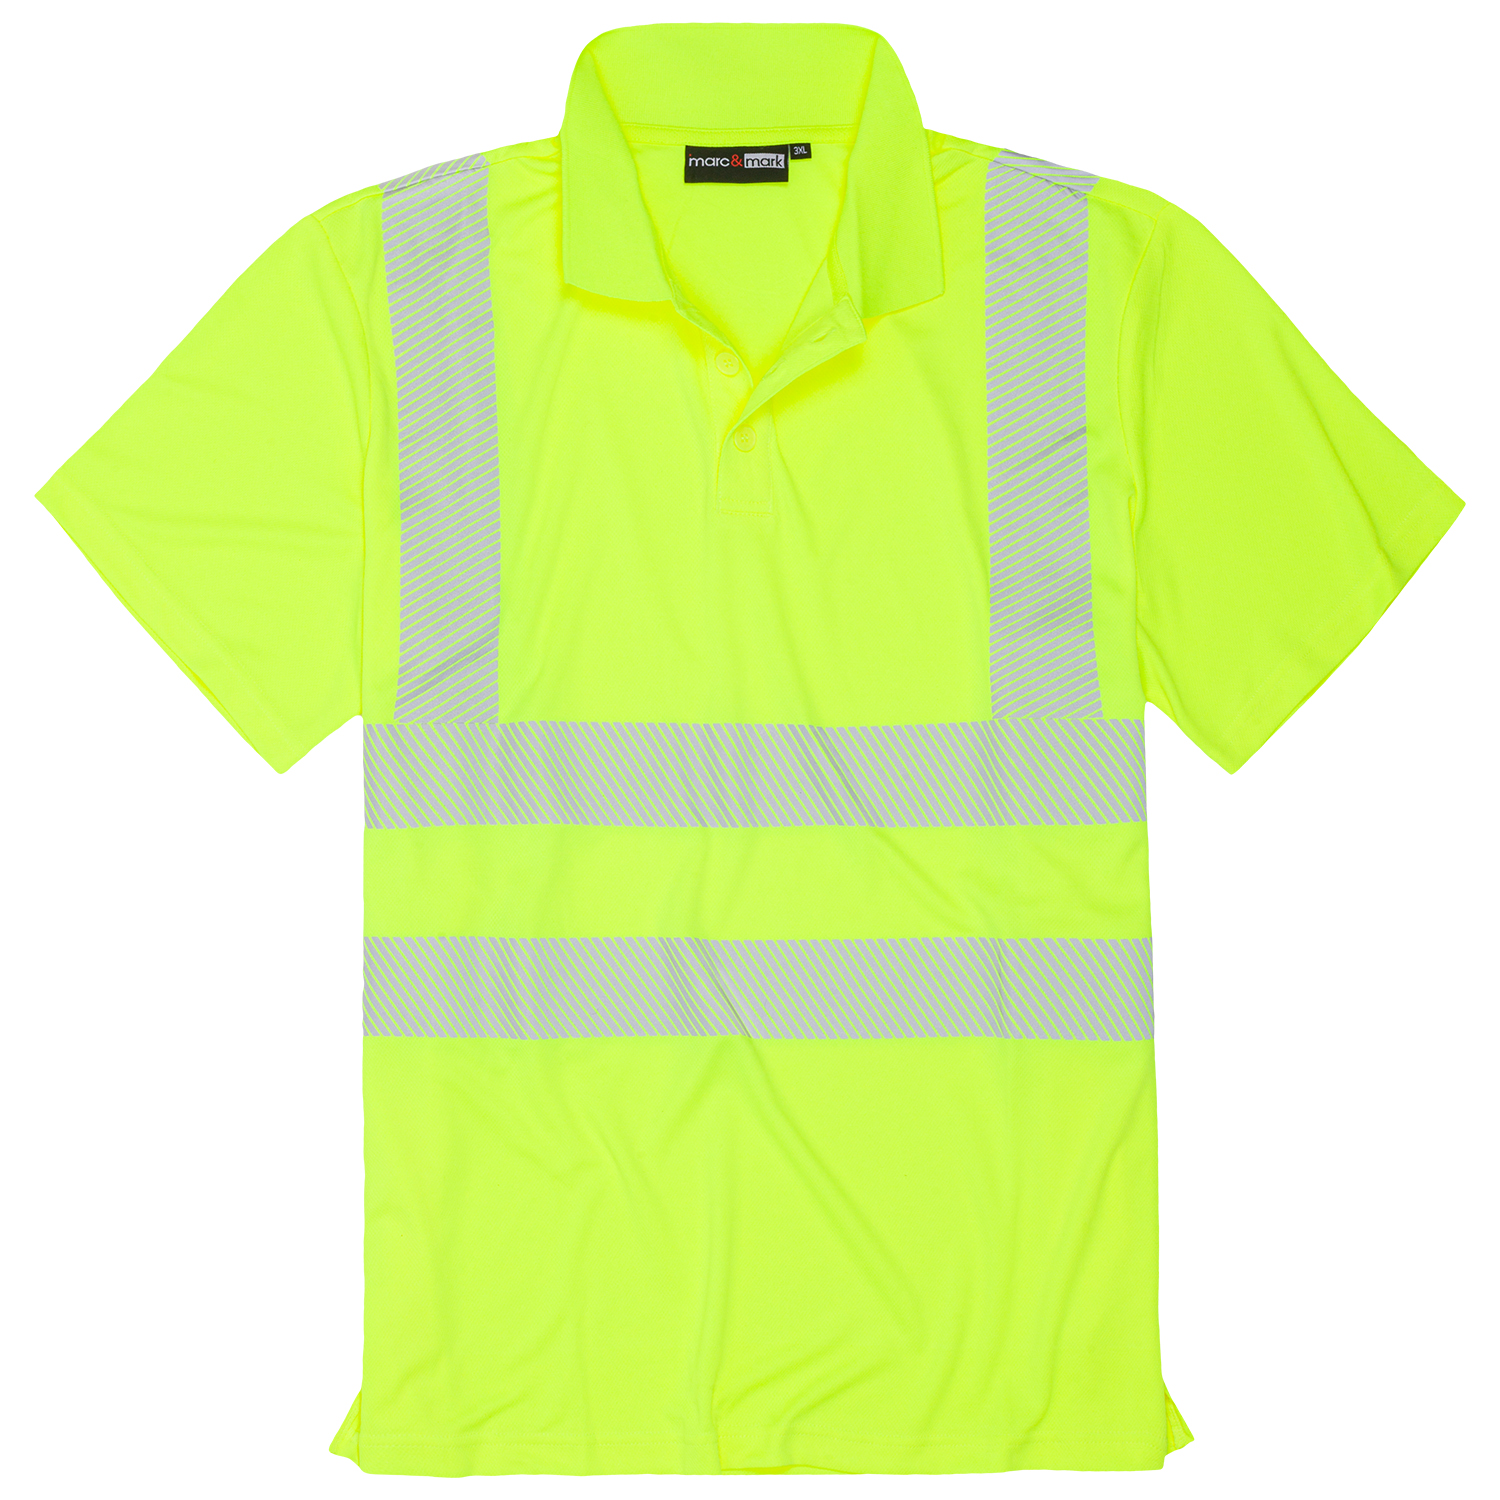 Neongelbes Warnschutz Poloshirt kurzarm für Herren von marc&mark in Übergrößen bis 8XL